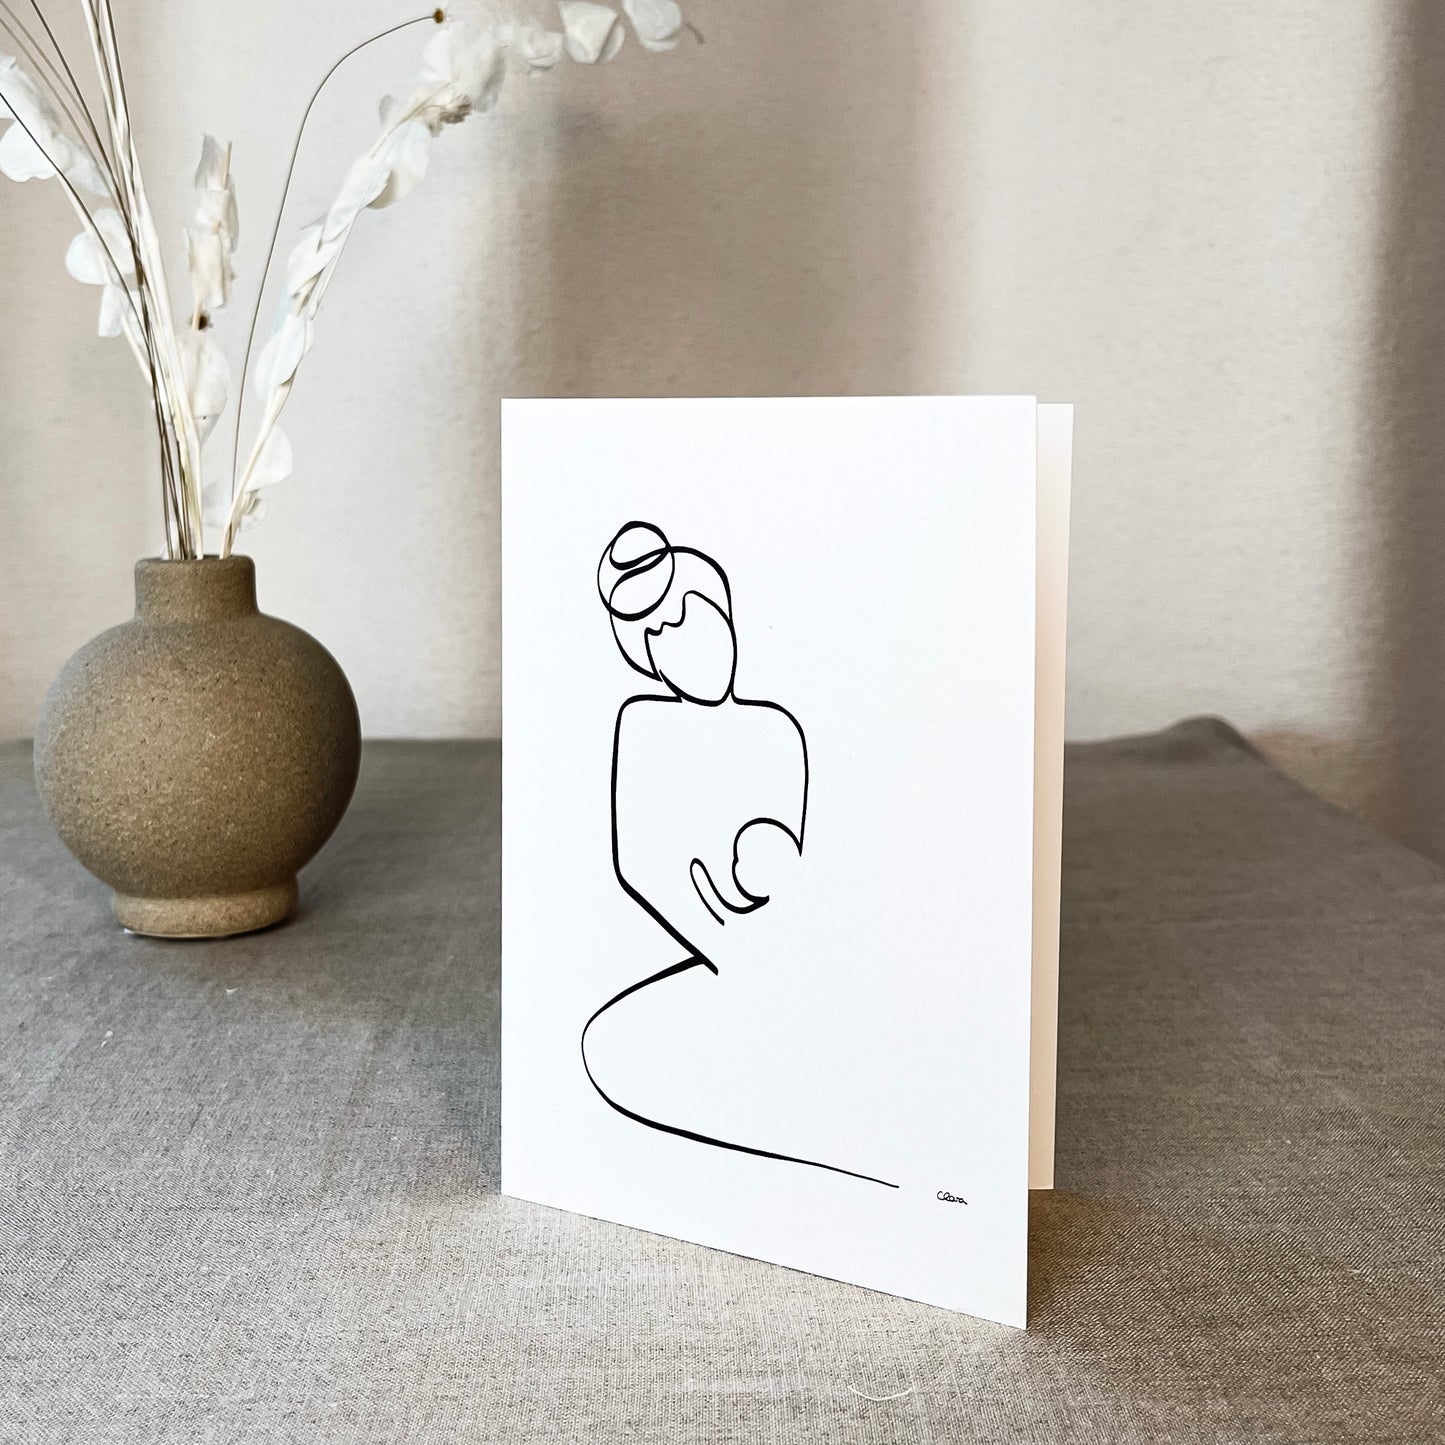 Mutter und Kind Nr. 2-Leinwand-JUDITH CLARA-12x17 cm Grußkarte (zartweiß) Papier 300g-one-line-art